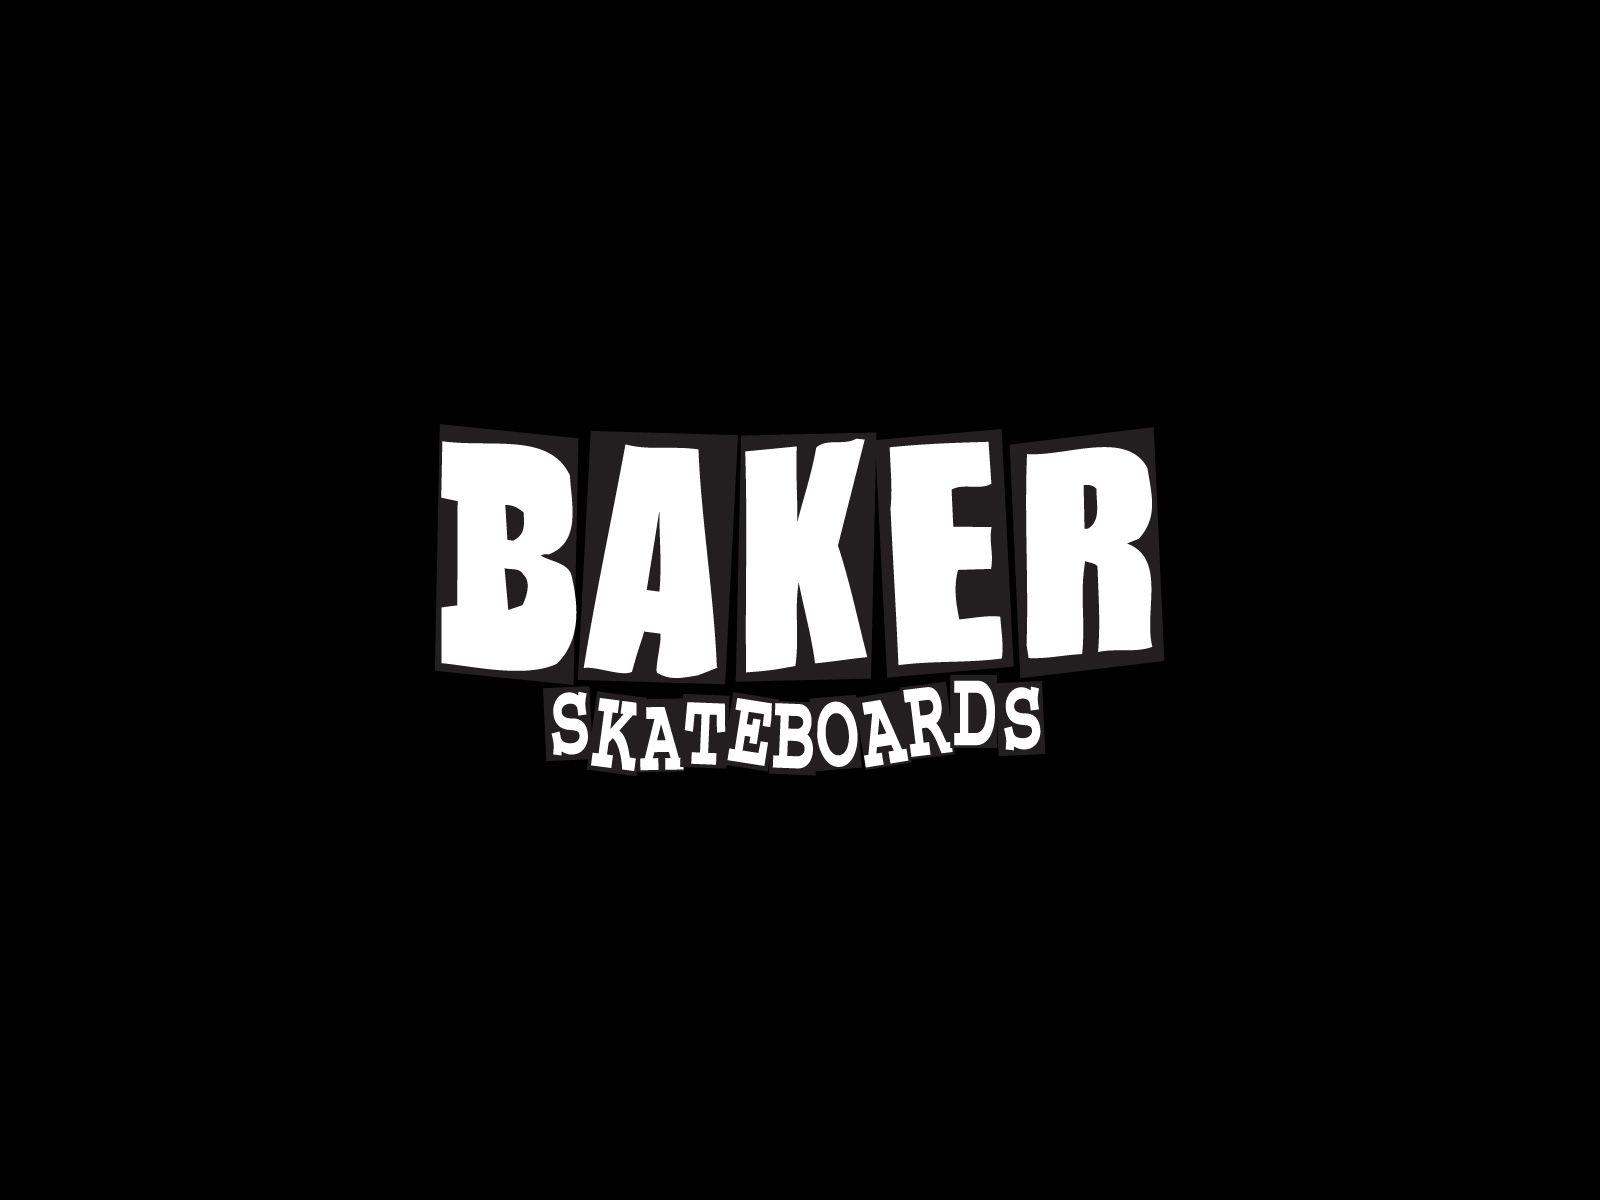 skateboarding logos. Skateboarding wallpaper, skateboard